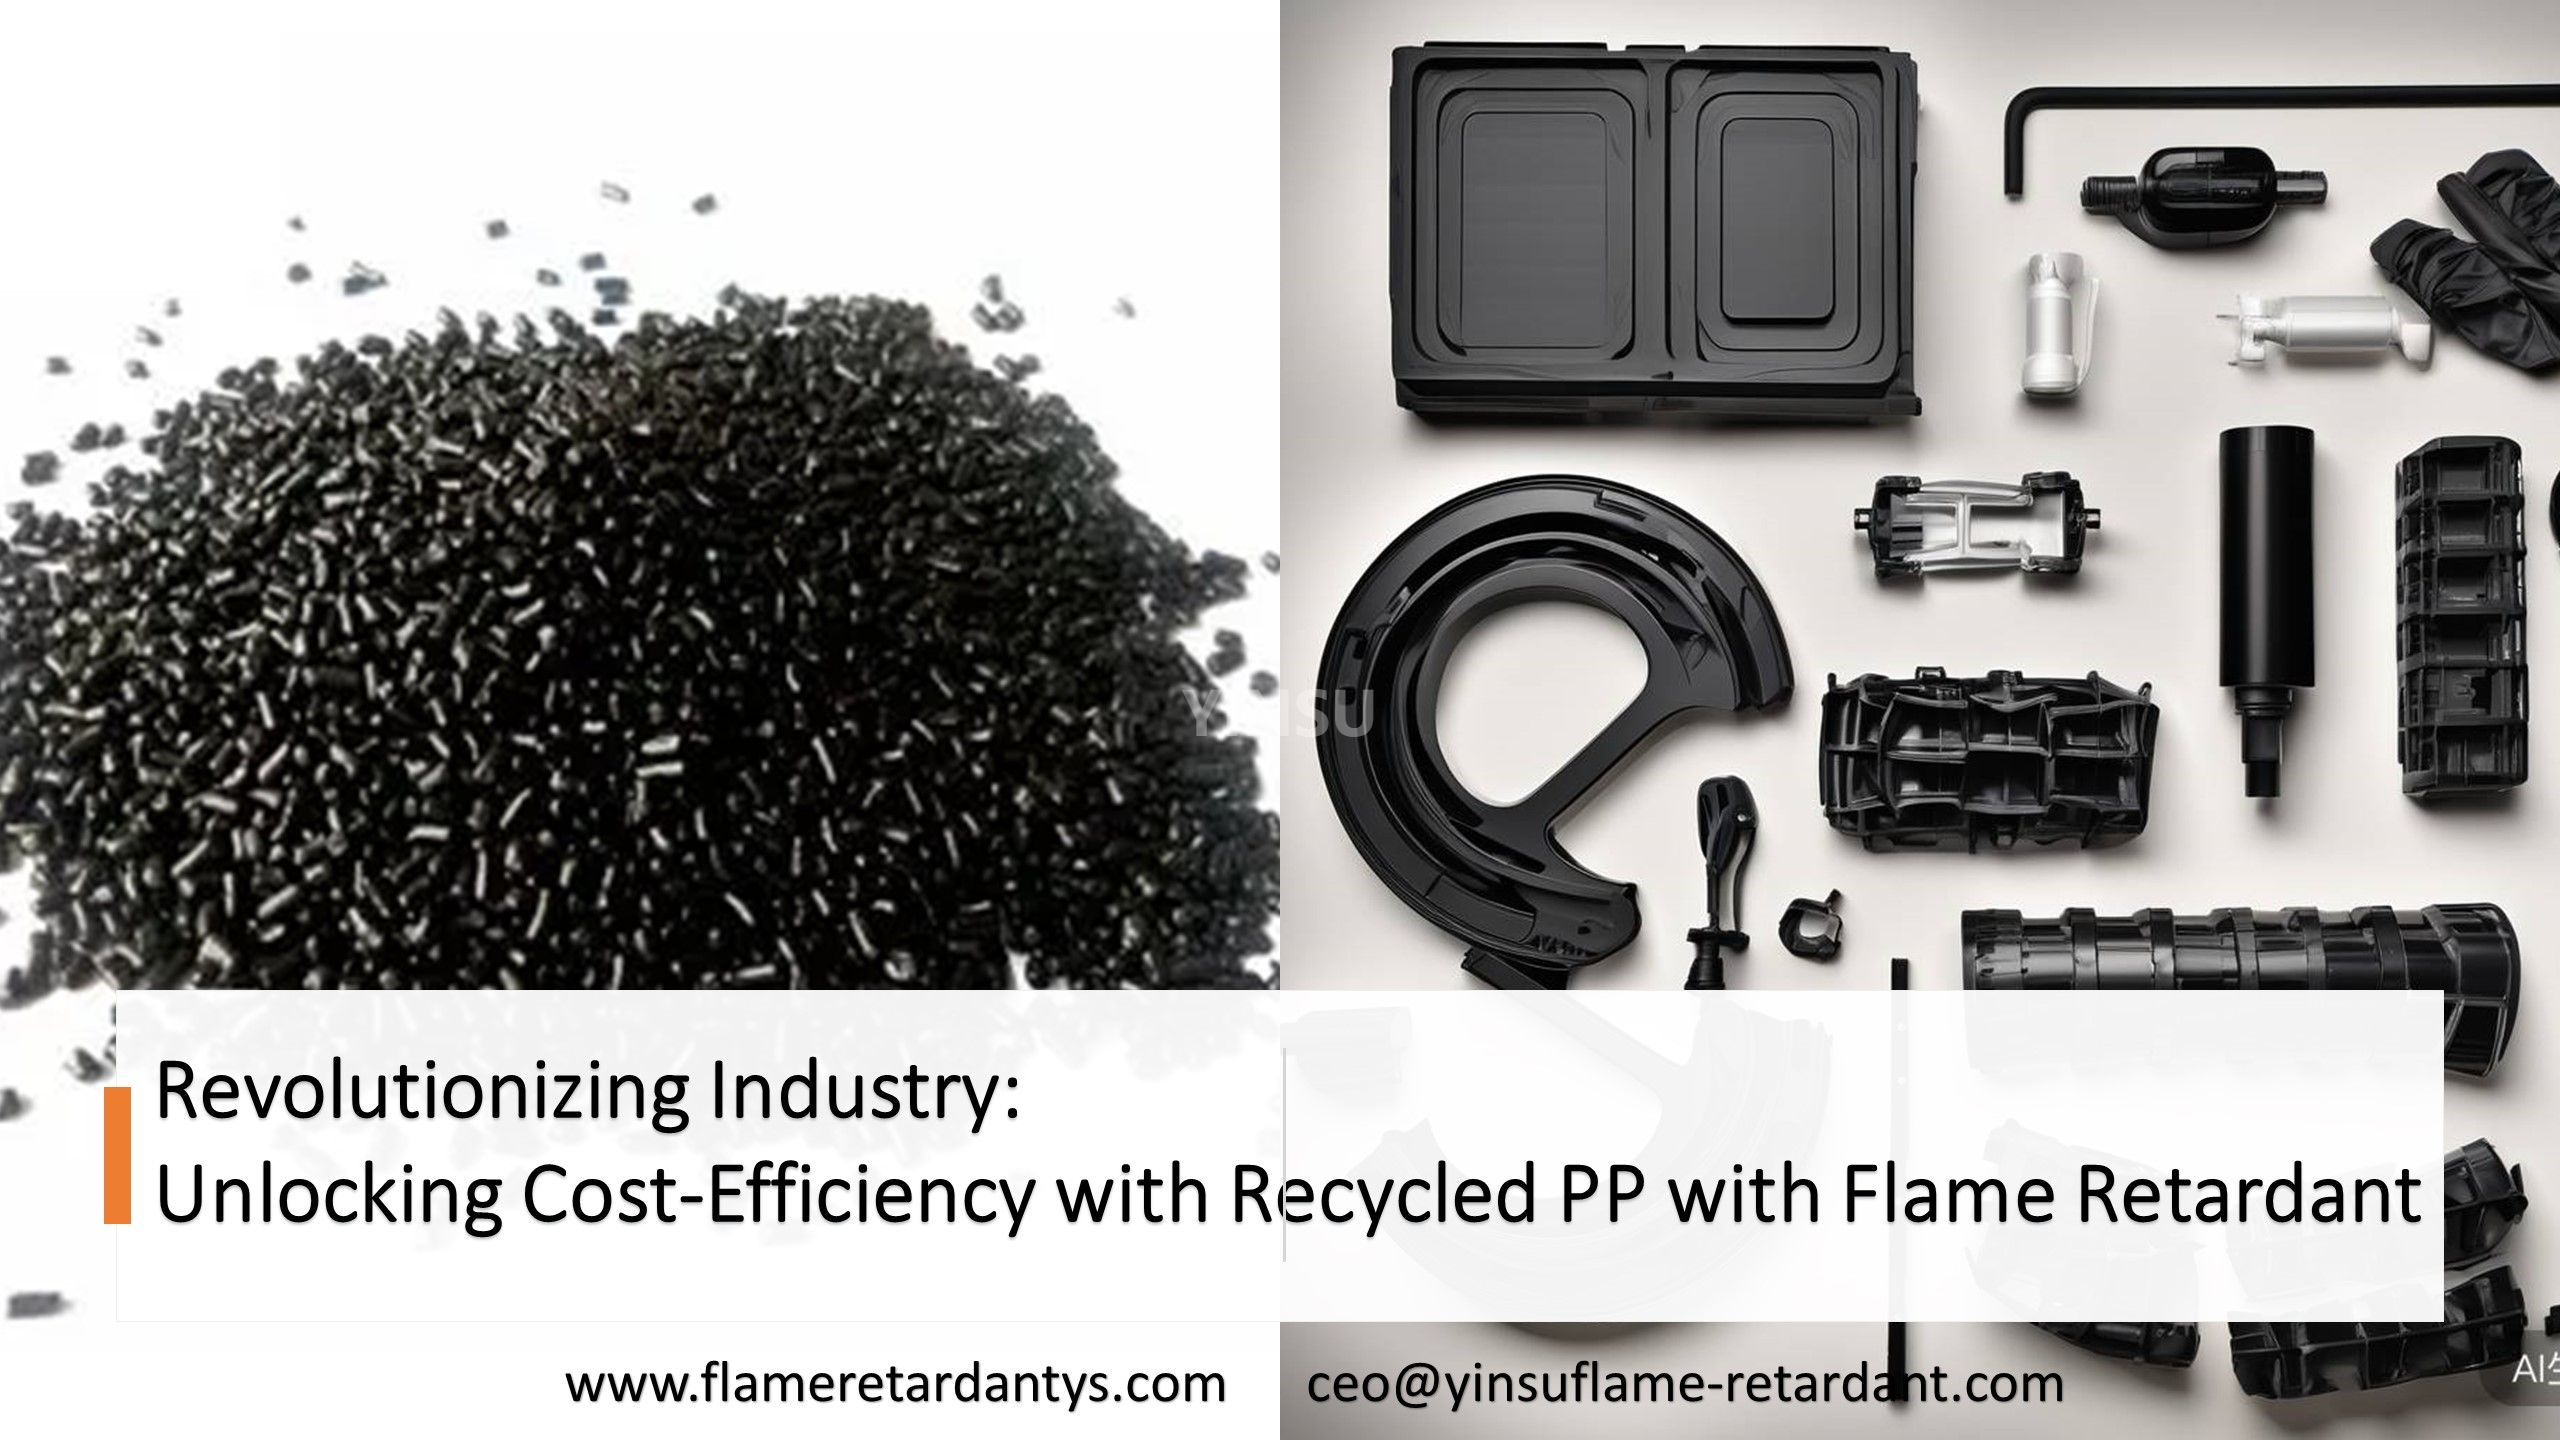 Revolutionierung der Industrie: Erzielung von Kosteneffizienz durch recyceltes PP mit Flammschutzmittel